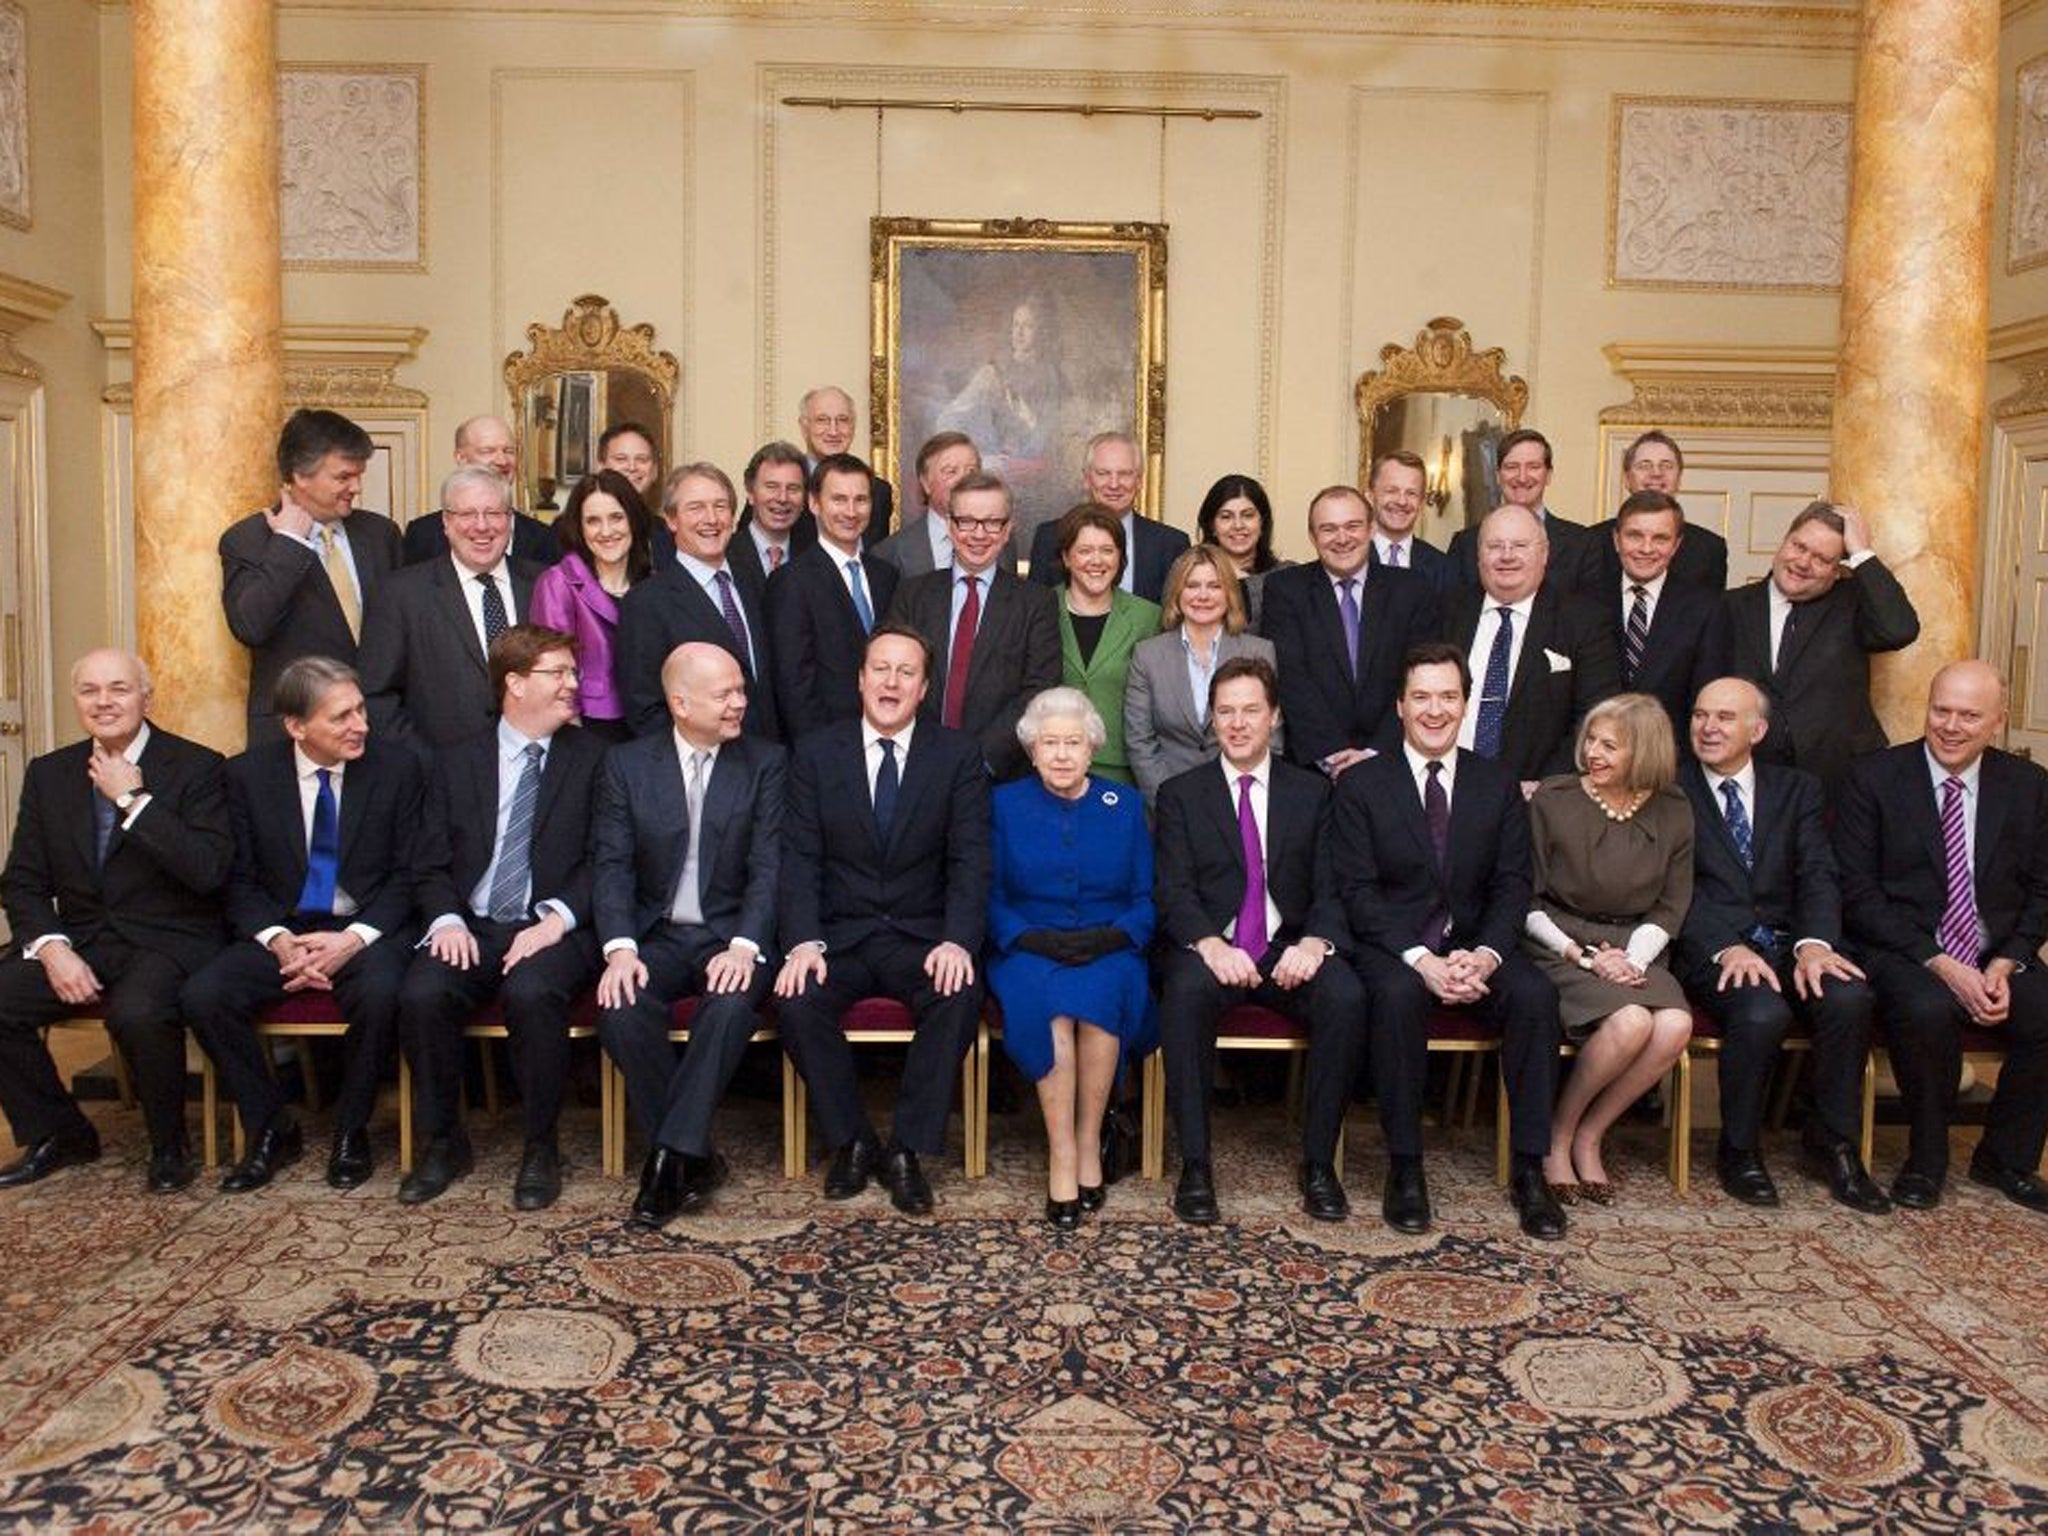 Правительство Великобритании Дэвид Кэмерон. Кабинет министров Великобритании 2020. Заседание правительства Великобритании Дэвид Кэмерон. Королева Великобритании в правительстве. Местная элита